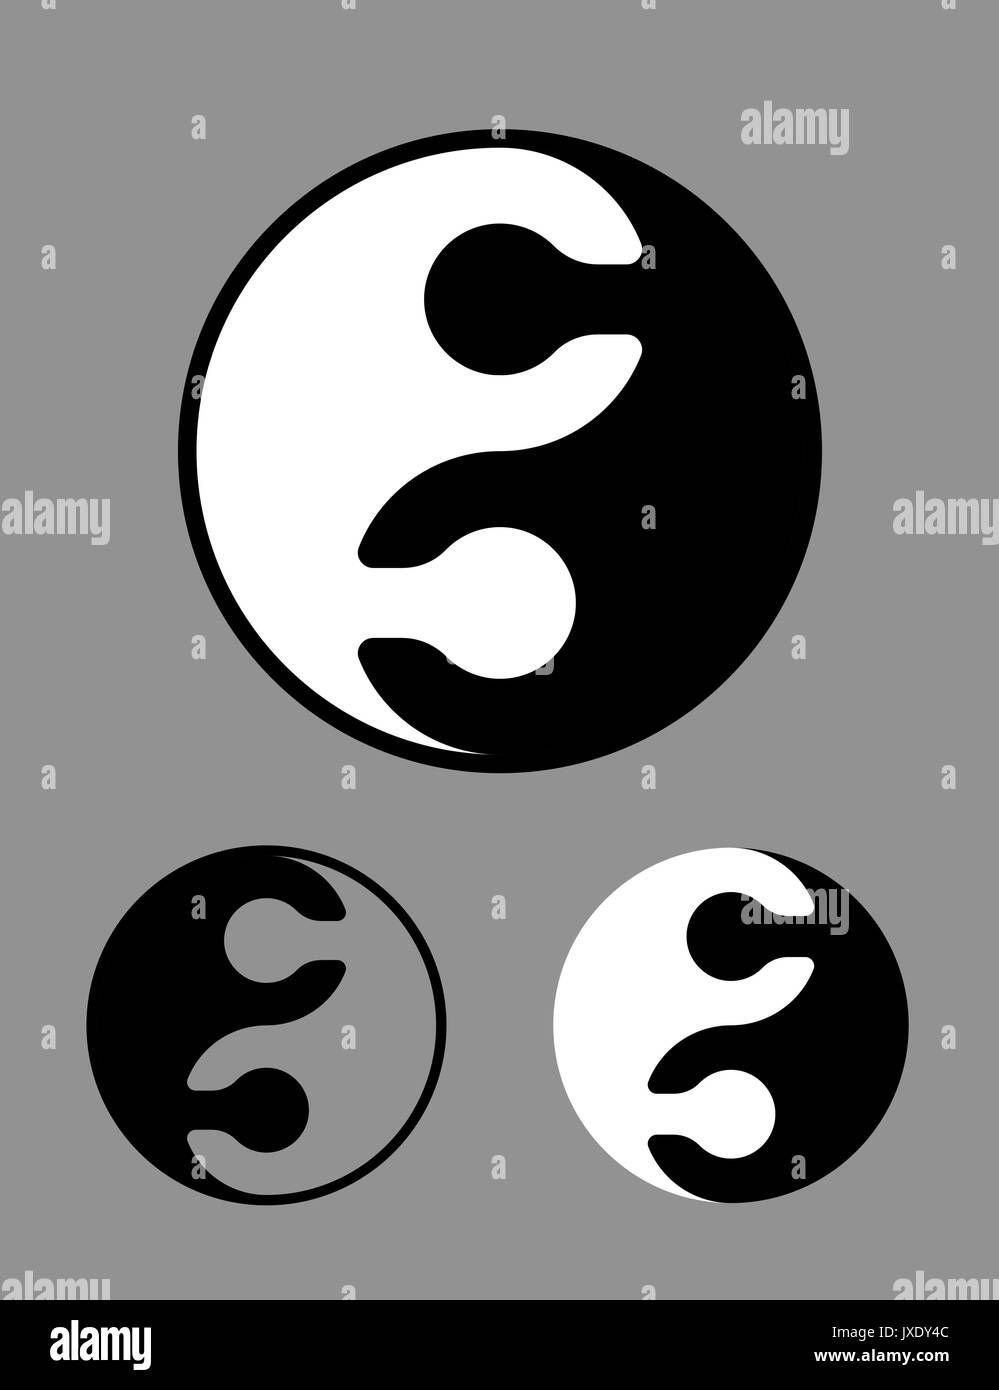 Creative in bianco e nero Yin Yang simbolo di asservito puzzle concettuale  di pezzi di armonia, zen, meditazione, opposti nella filosofia cinese  Immagine e Vettoriale - Alamy